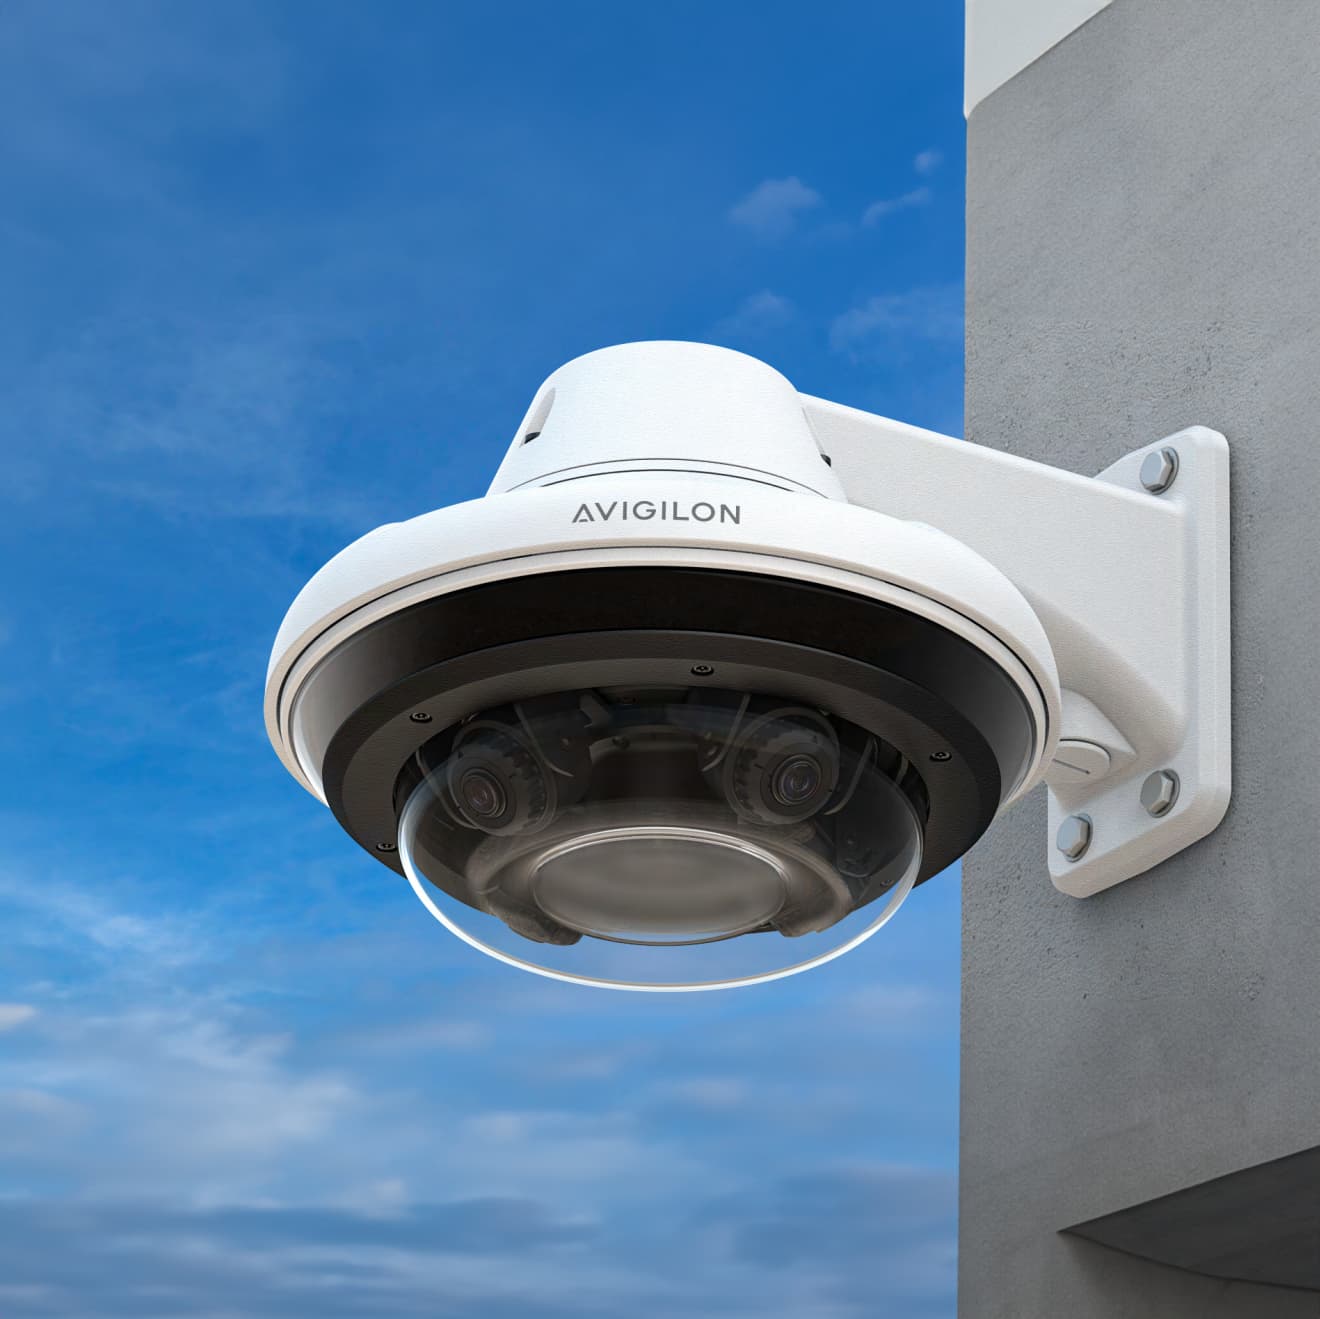 Security camera located on the exterior of a luxury condominium.